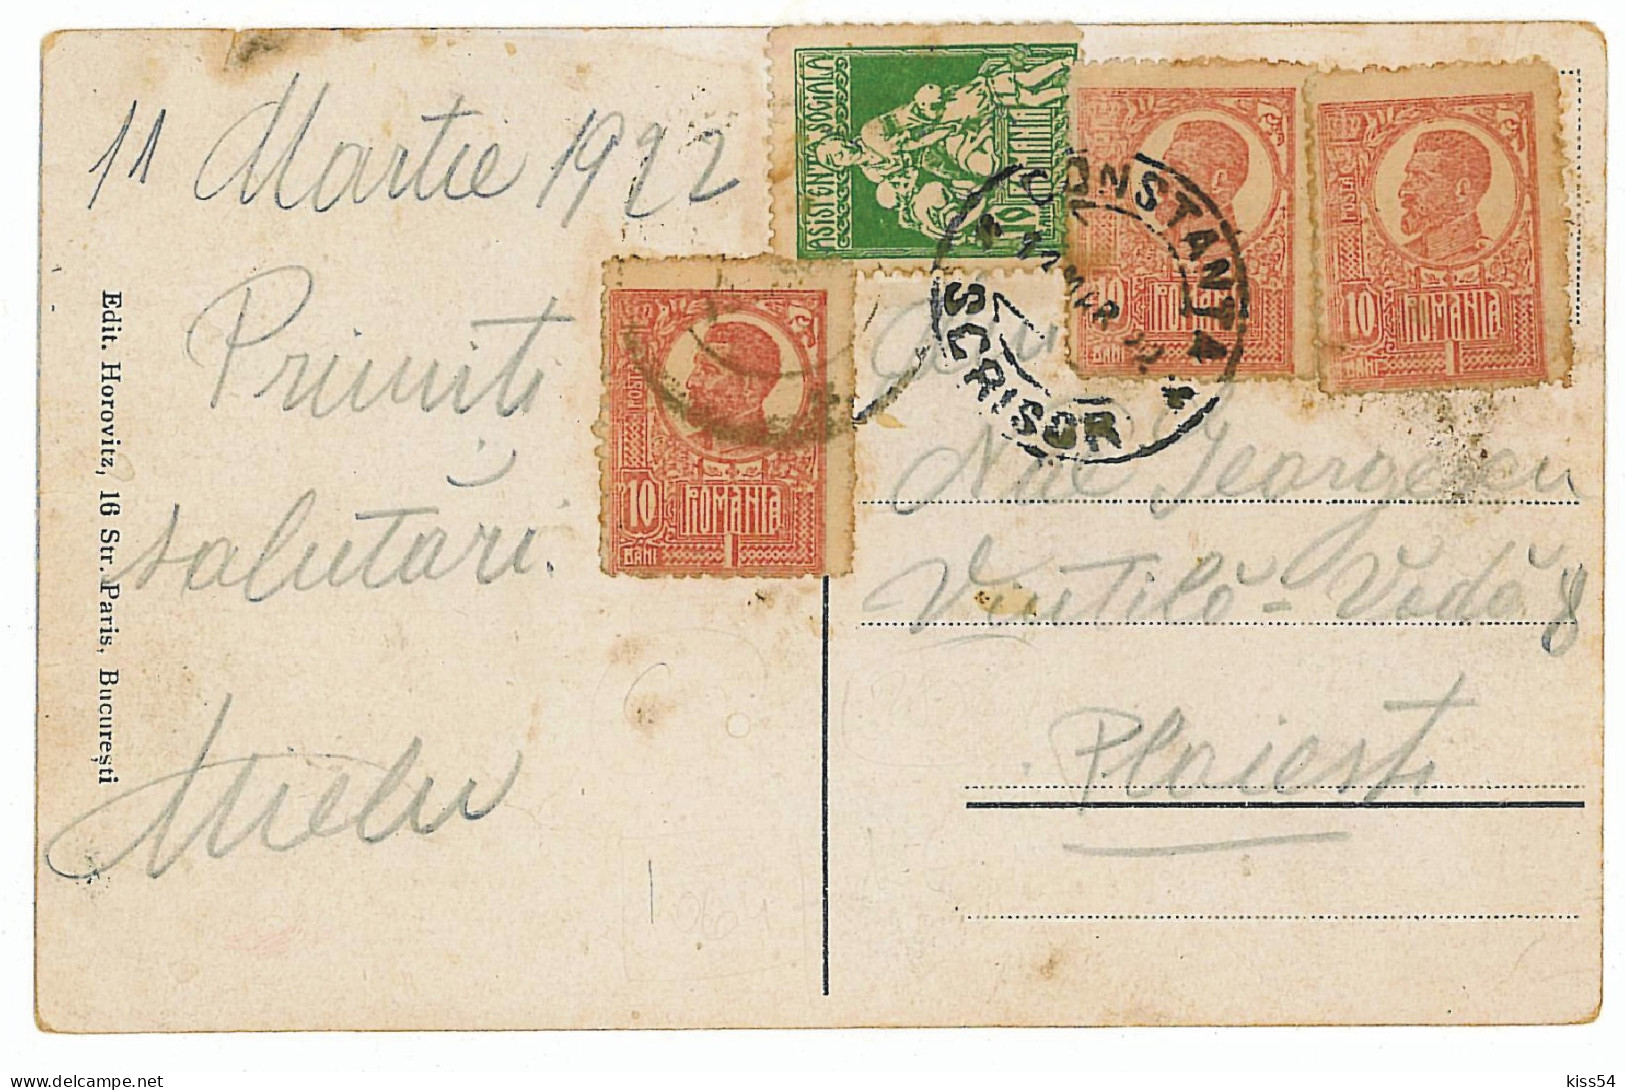 RO 81 - 2858  CONSTANTA, Statuia Lui Ovidiu, Market, Romania - Old Postcard - Used - 1922 - Rumania